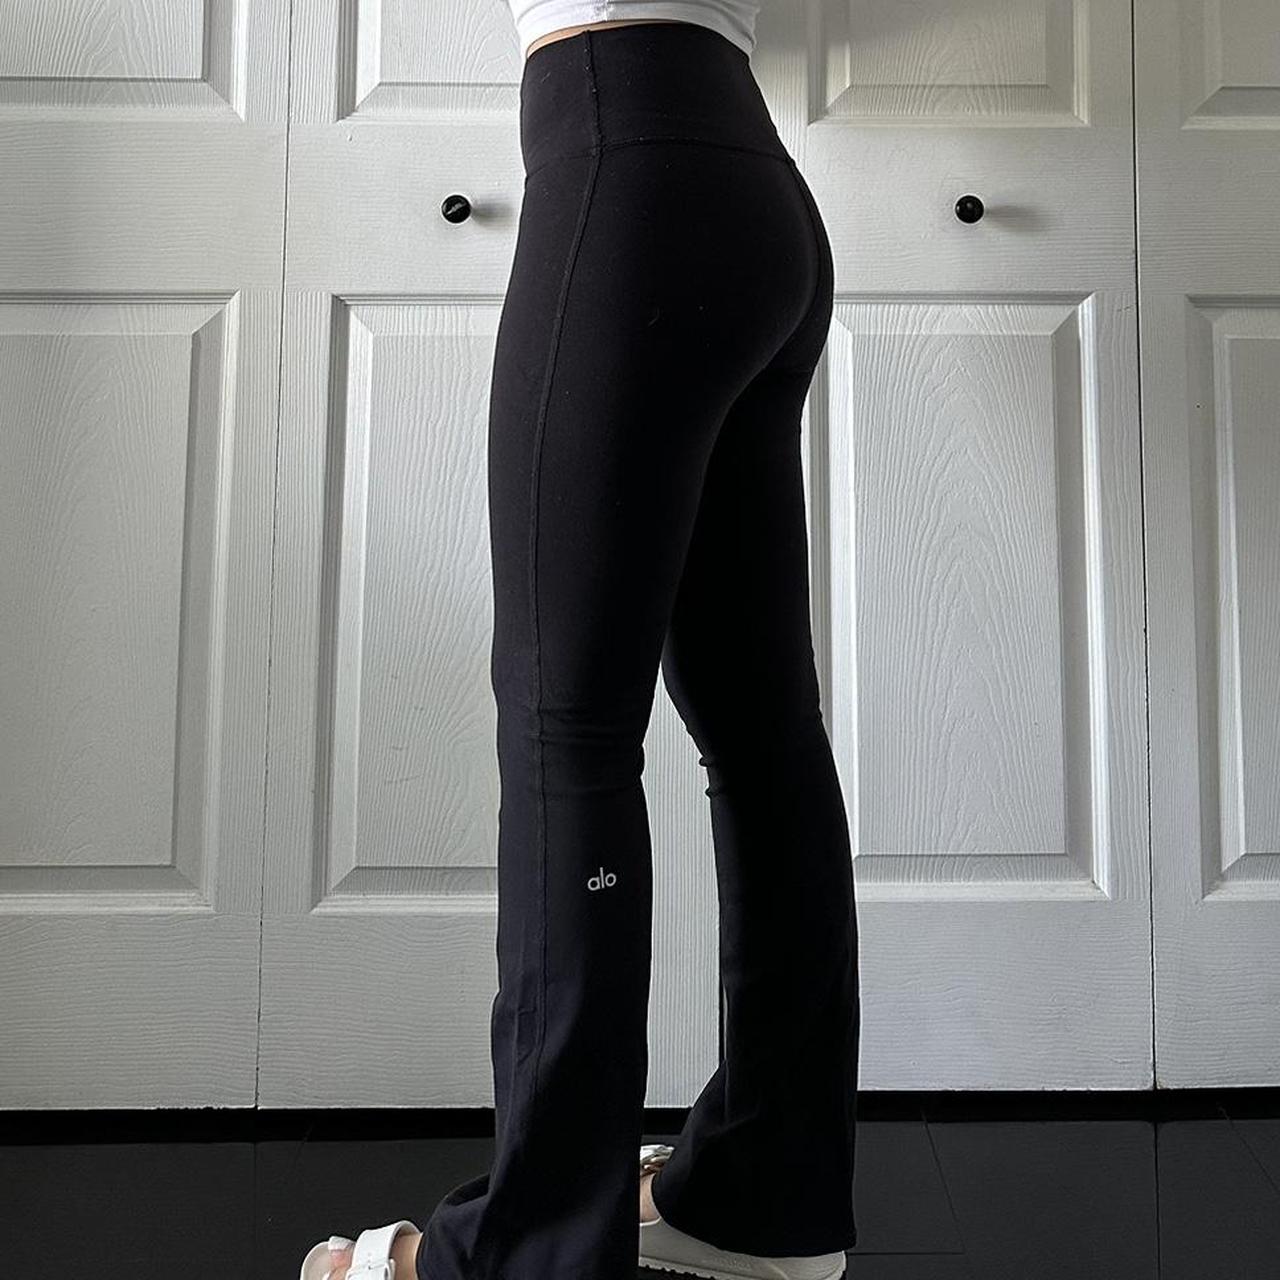 ALO Yoga Goddess Leggings Red Grey M Medium gym yoga - Depop